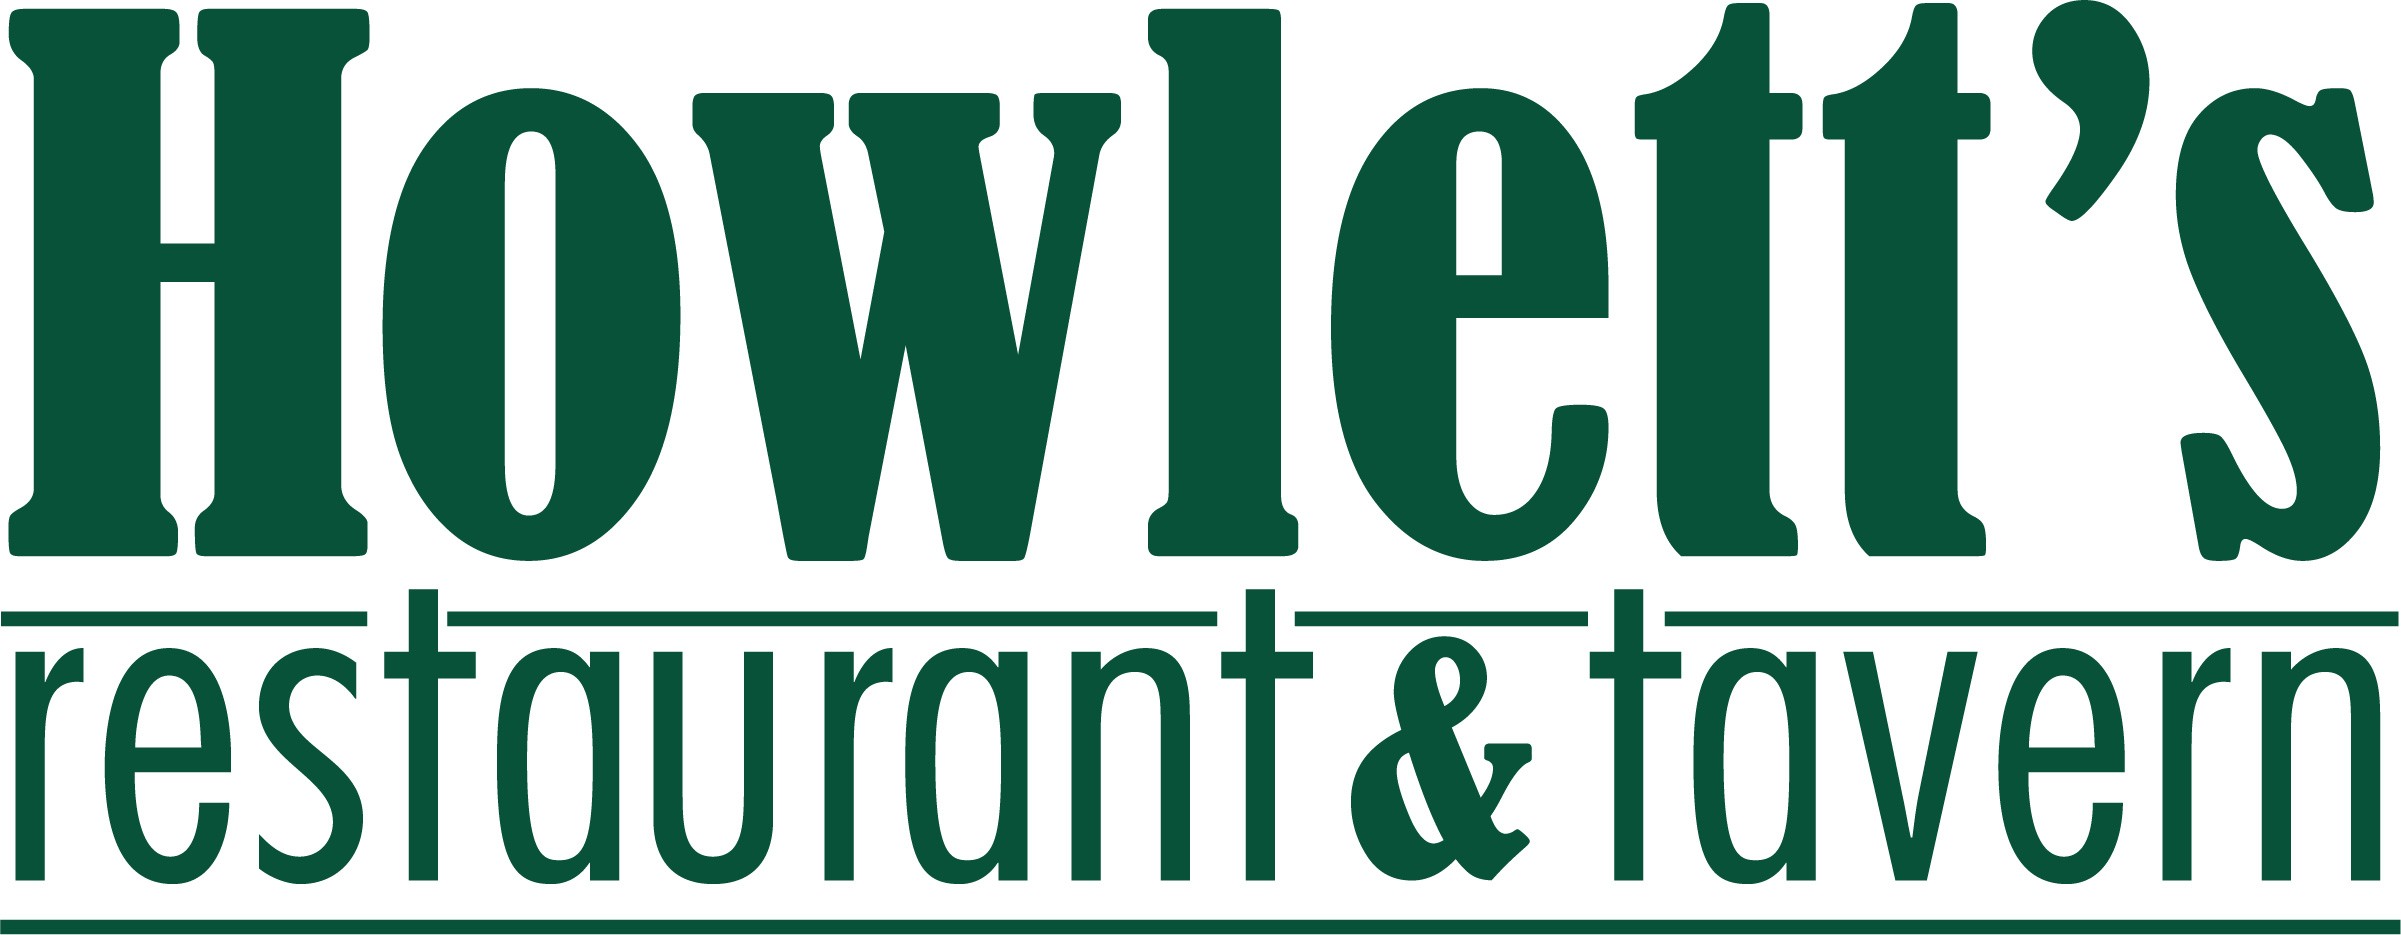 Howlett's Restaurant and Tavern